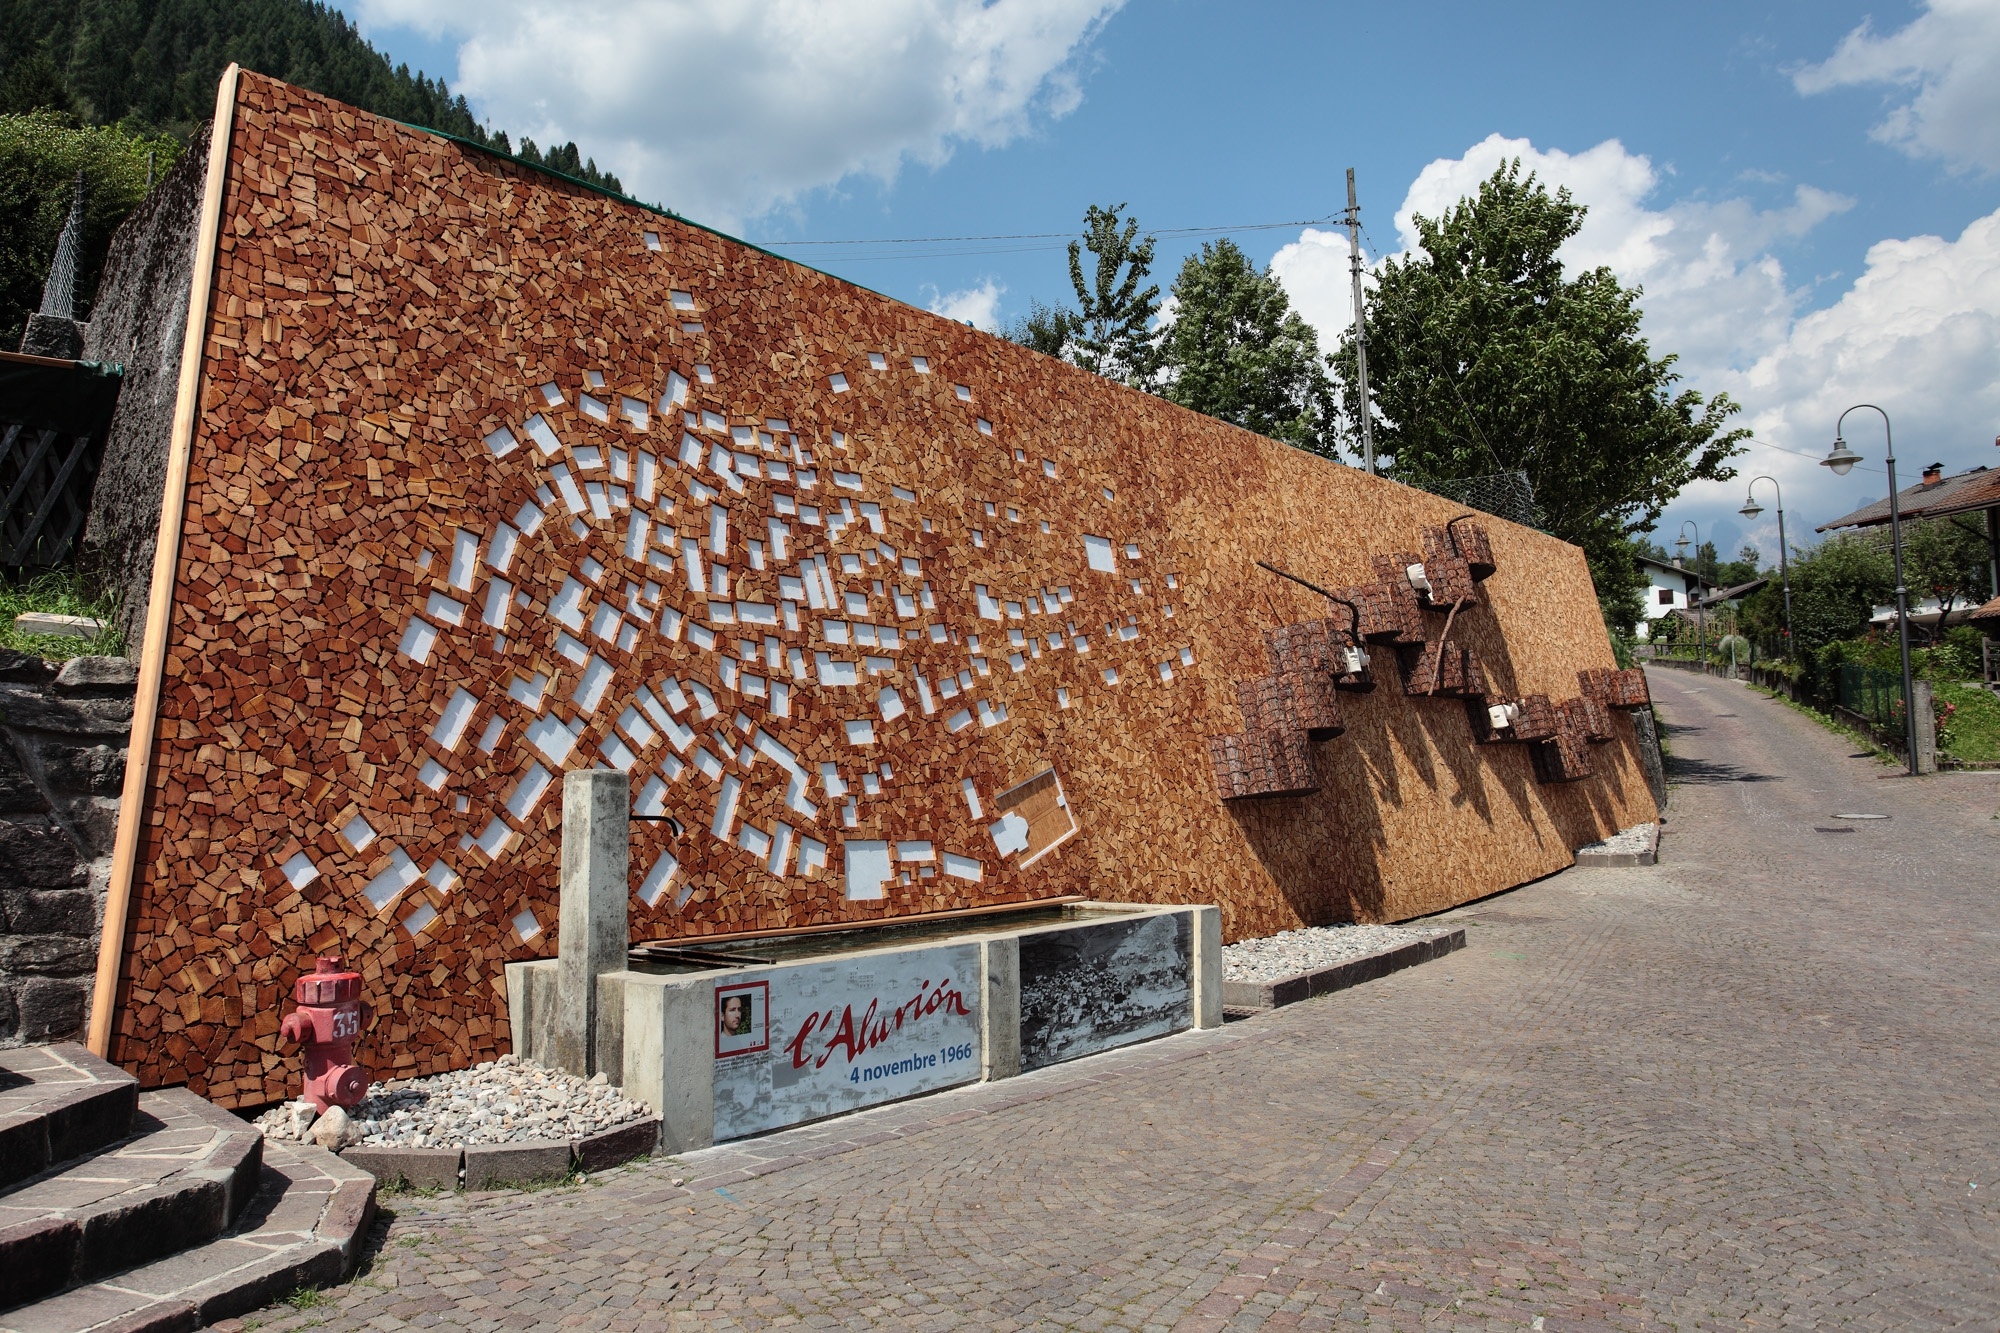 8 nuove cataste d'autore a Mezzano di Primiero, borgo trentino dove le cataste di legna diventano opere d'arte